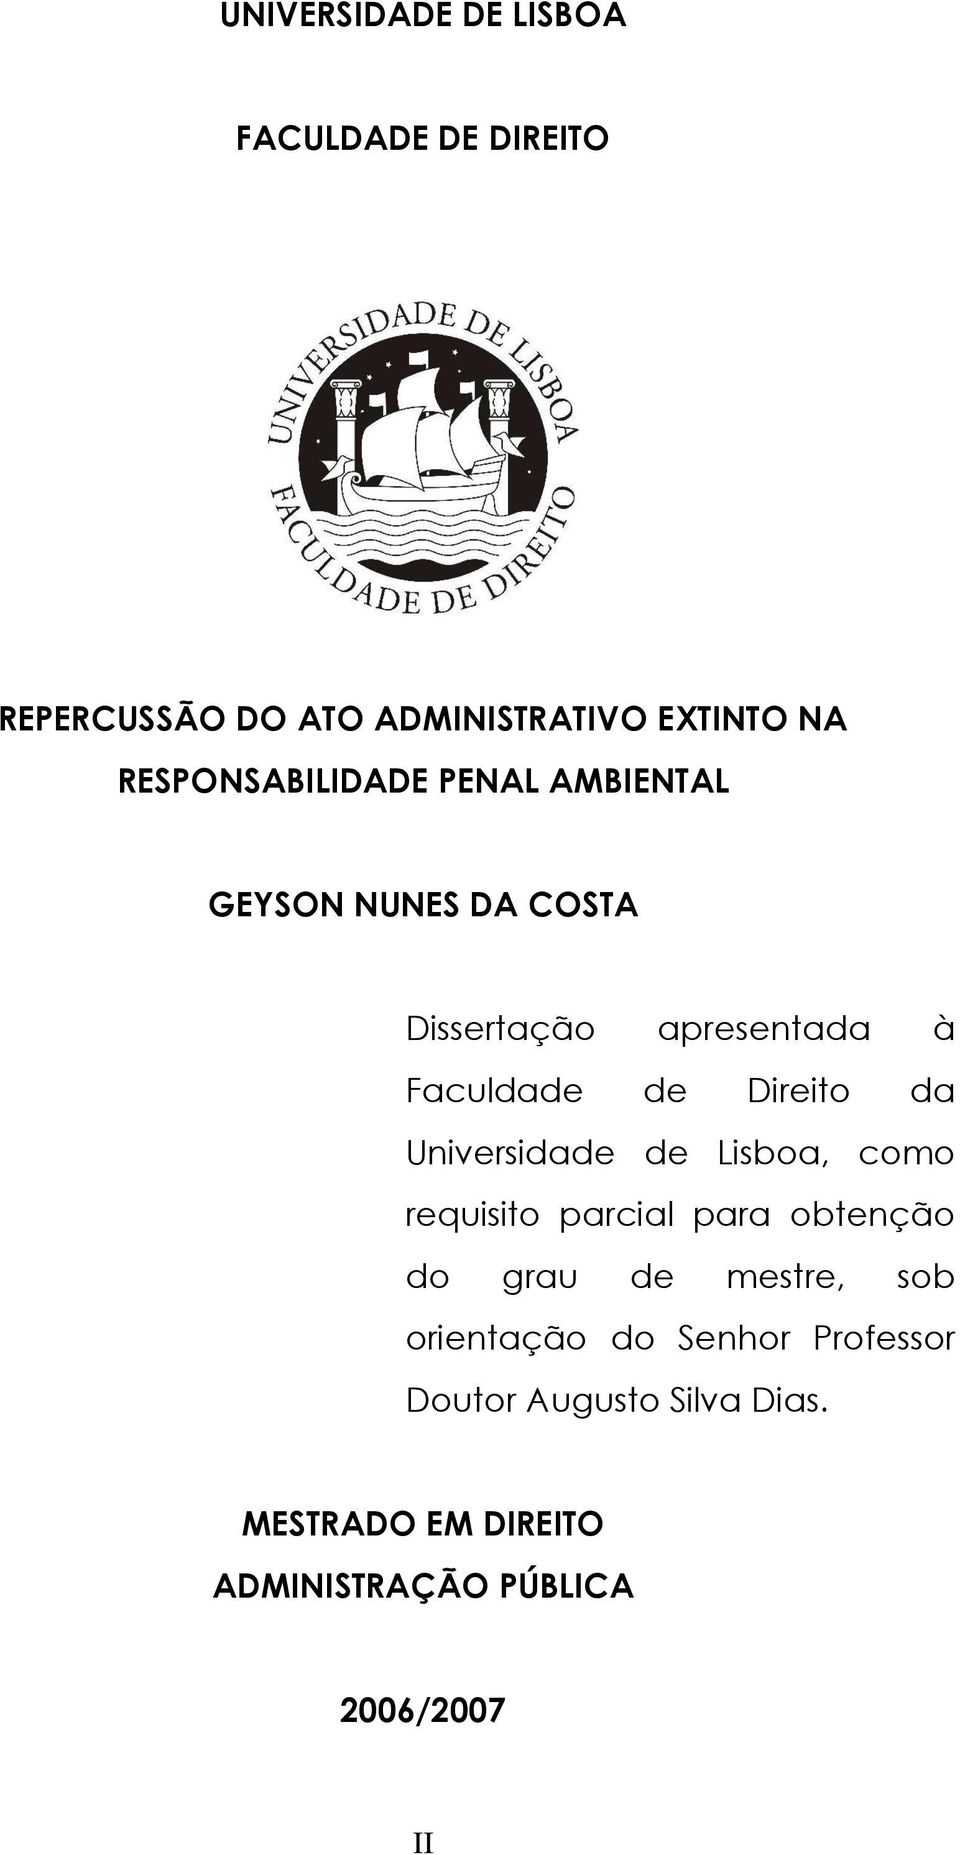 Direito da Universidade de Lisboa, como requisito parcial para obtenção do grau de mestre, sob